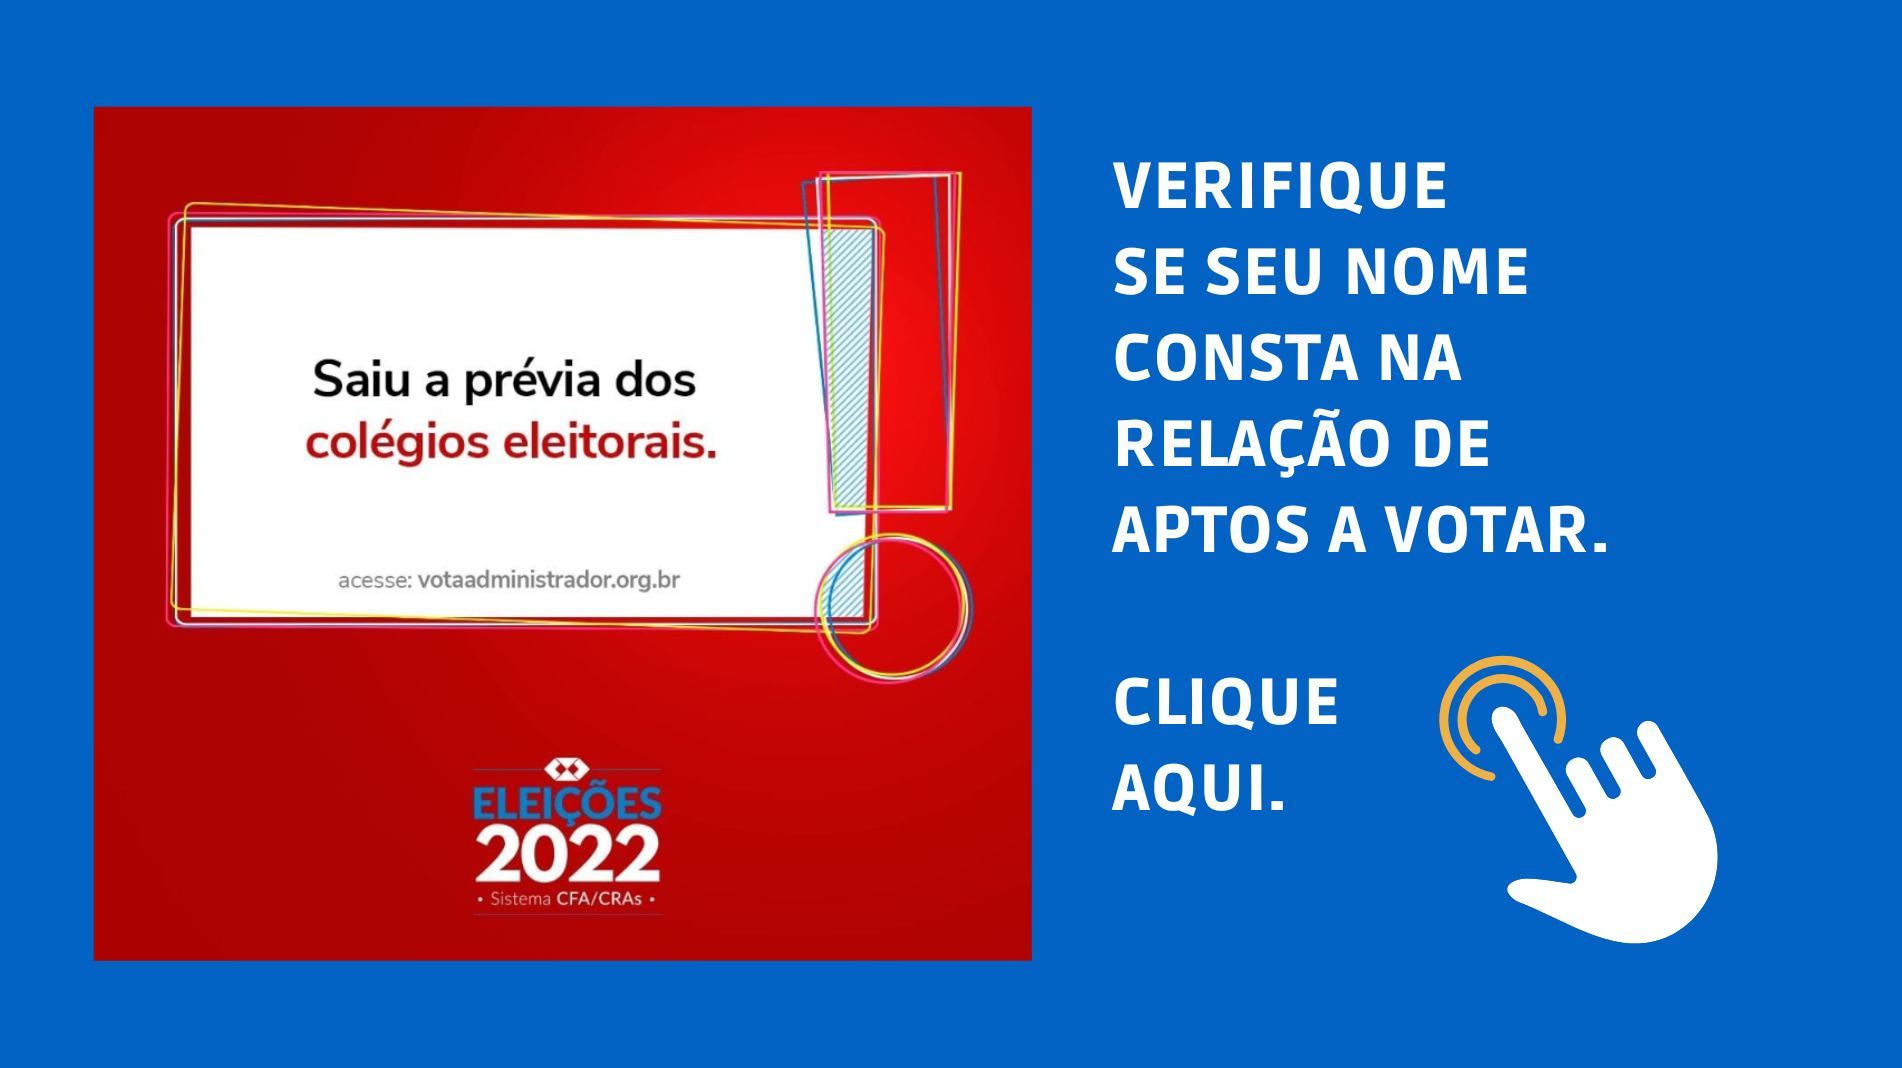 You are currently viewing ELEIÇÕES CFA | A prévia dos colégios eleitorais foi divulgada. Verifique se seu nome consta na relação.